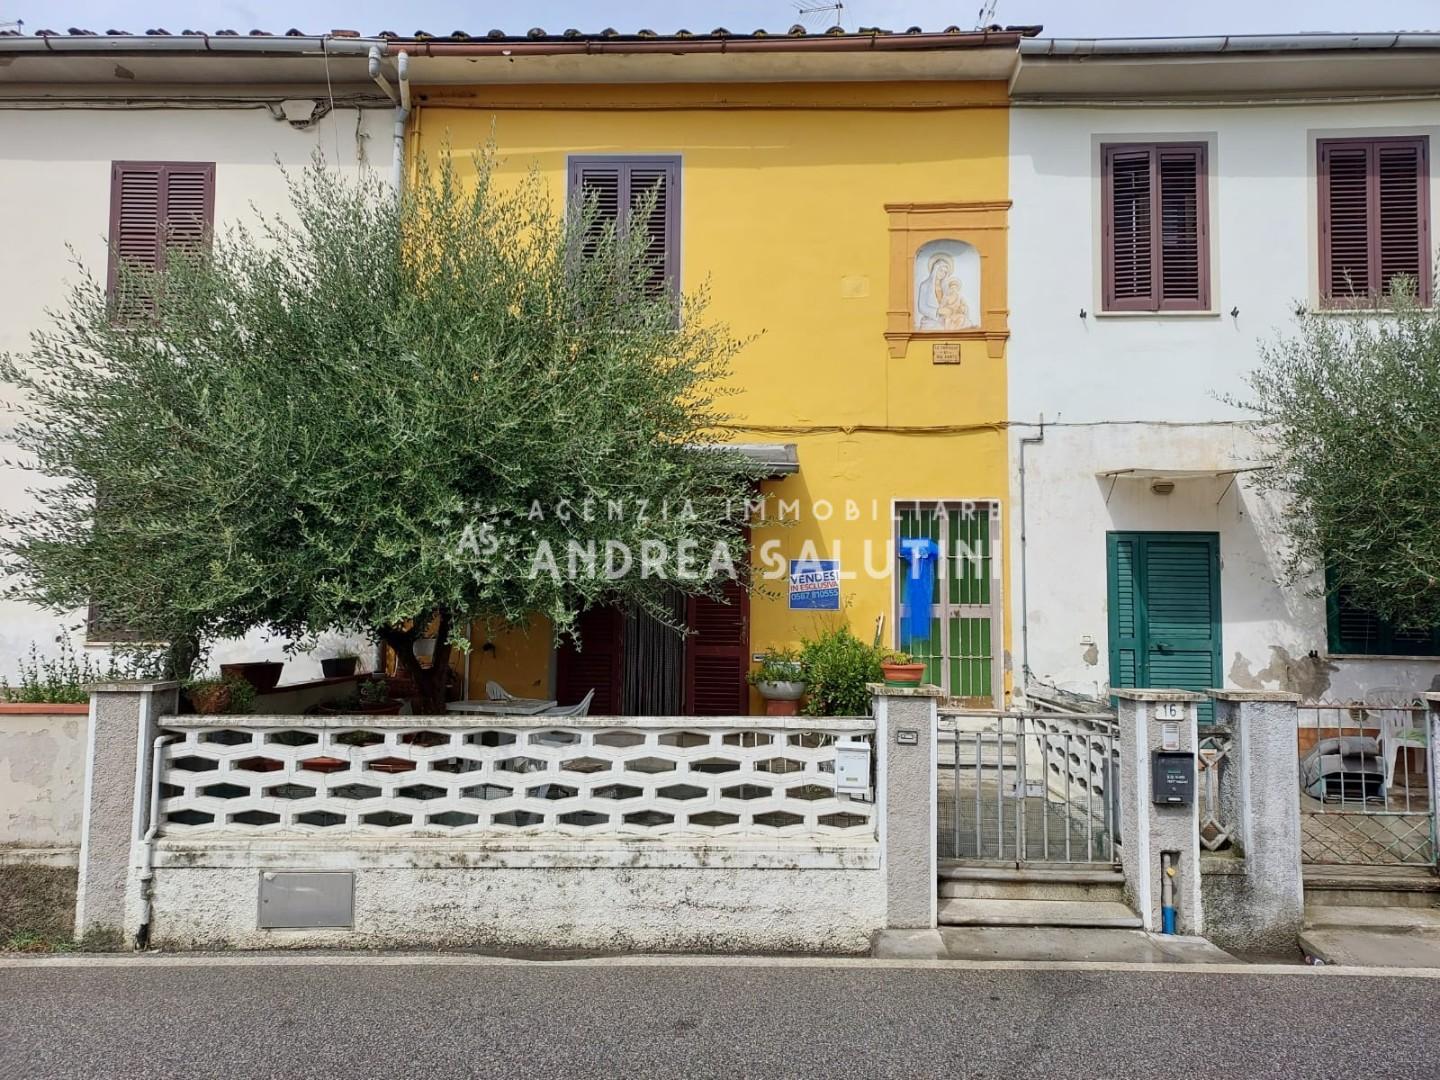 Soluzione Indipendente in vendita a Montopoli in Val d'Arno, 4 locali, prezzo € 112.000 | PortaleAgenzieImmobiliari.it